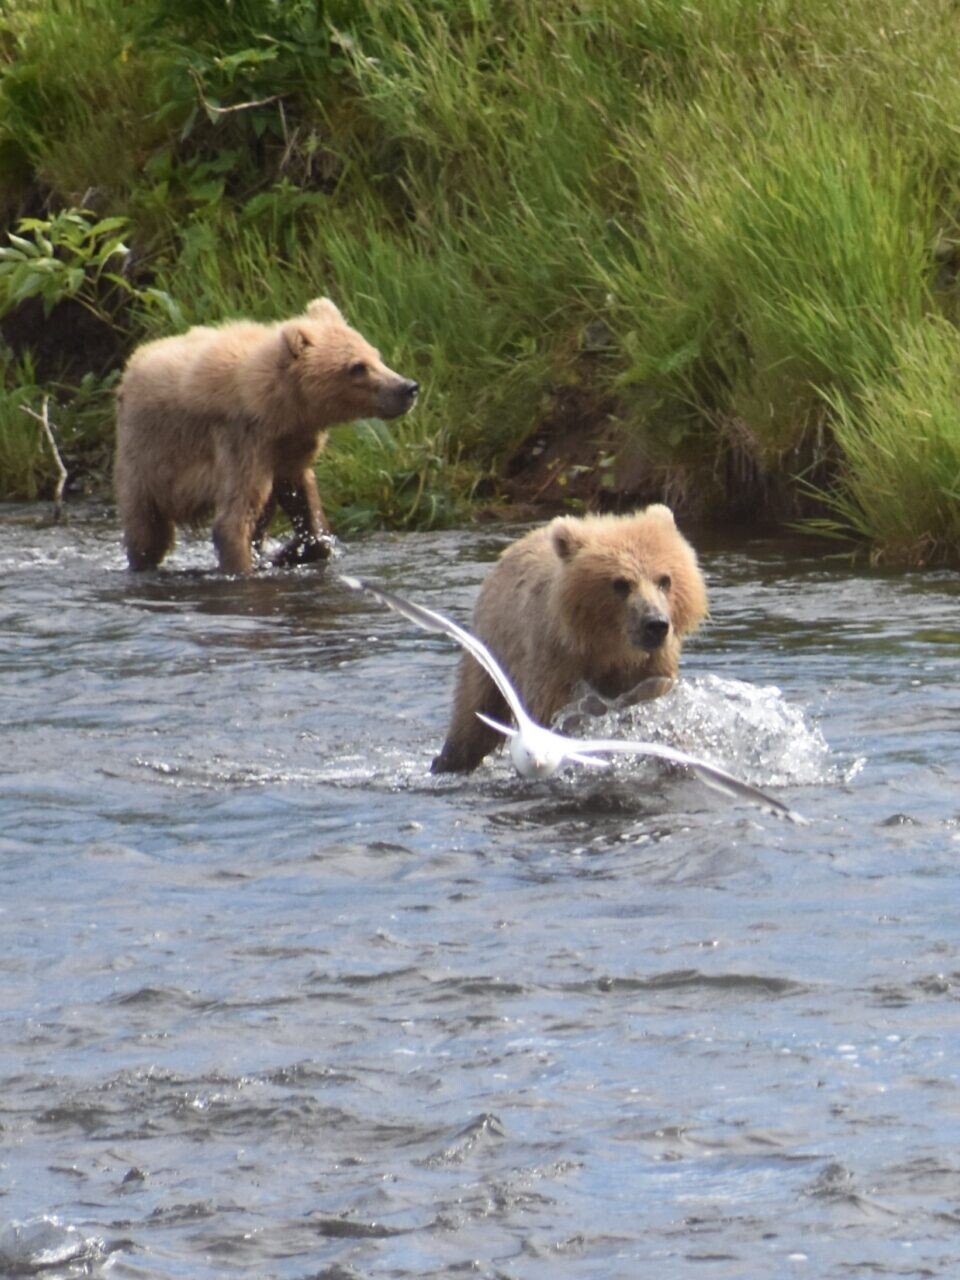 Kodiak bear catching salmon